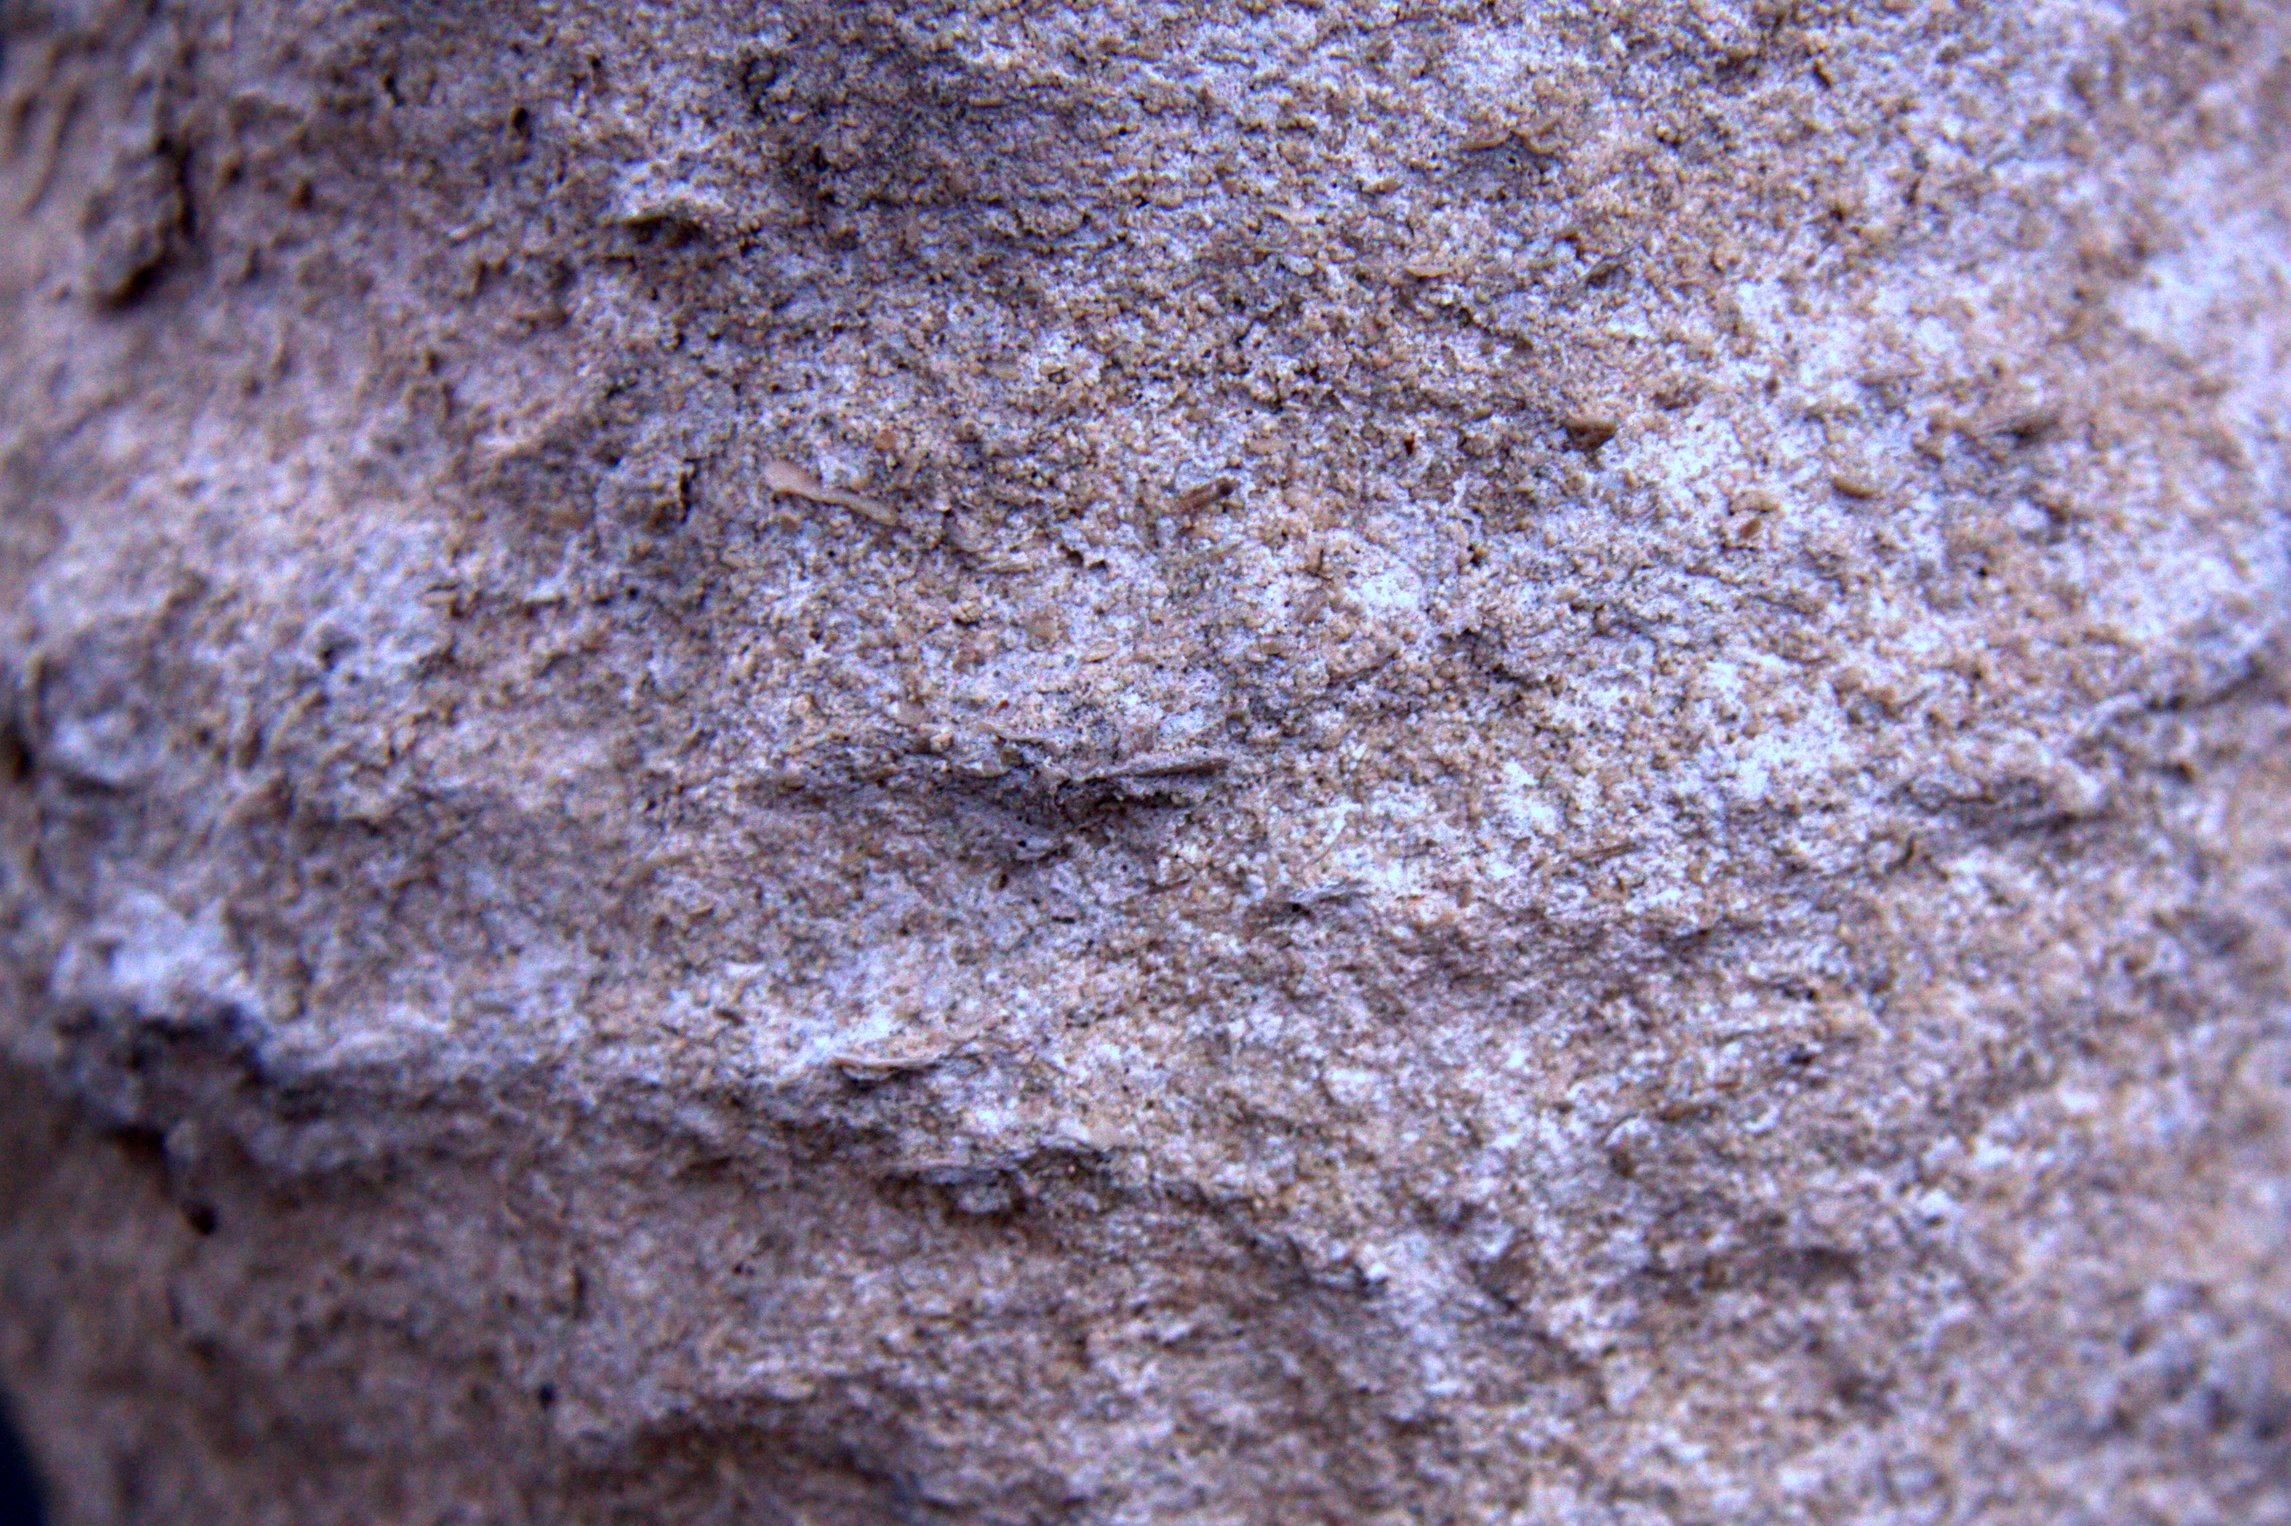 Eroded Stone Texture 1 by DorianStretton on DeviantArt